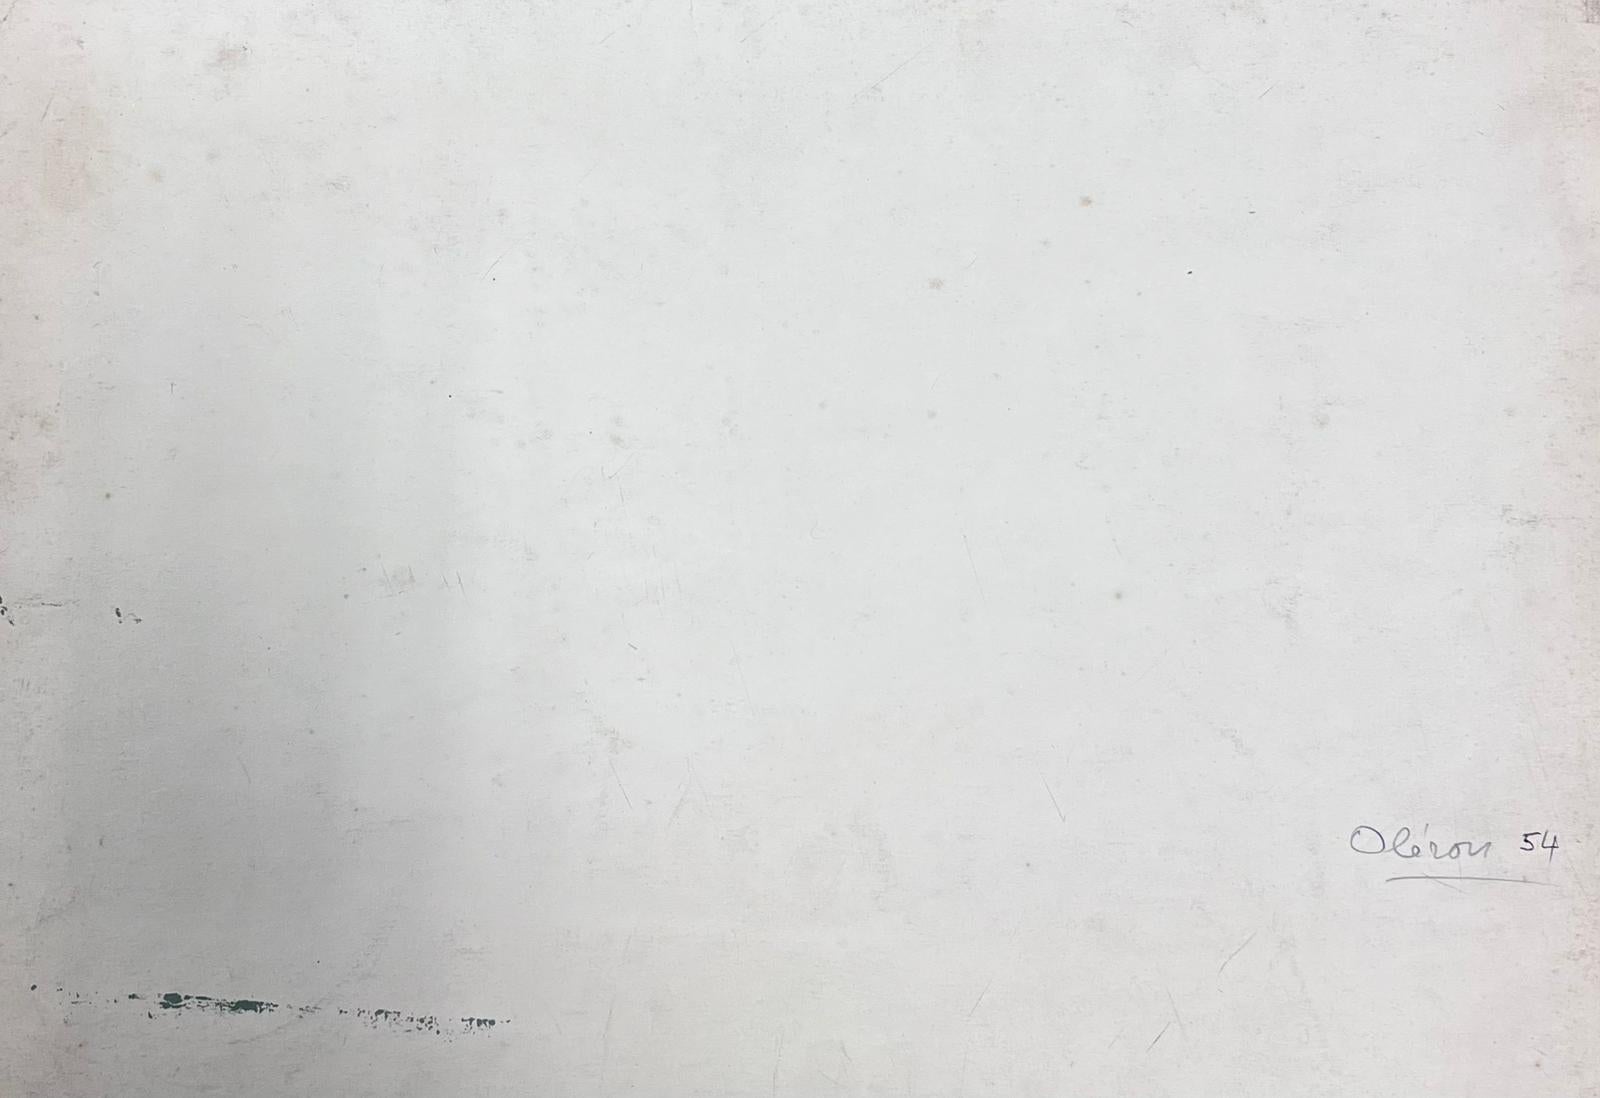 Kühe mampfen
von Y. Blanchon, französischer Künstler des Impressionismus der 1950er Jahre
signierte Gouache auf Künstlerpapier, ungerahmt
Gemälde: 12,5 x 16 Zoll
Provenienz: aus einer großen Privatsammlung dieses Künstlers in Nordfrankreich
Zustand: